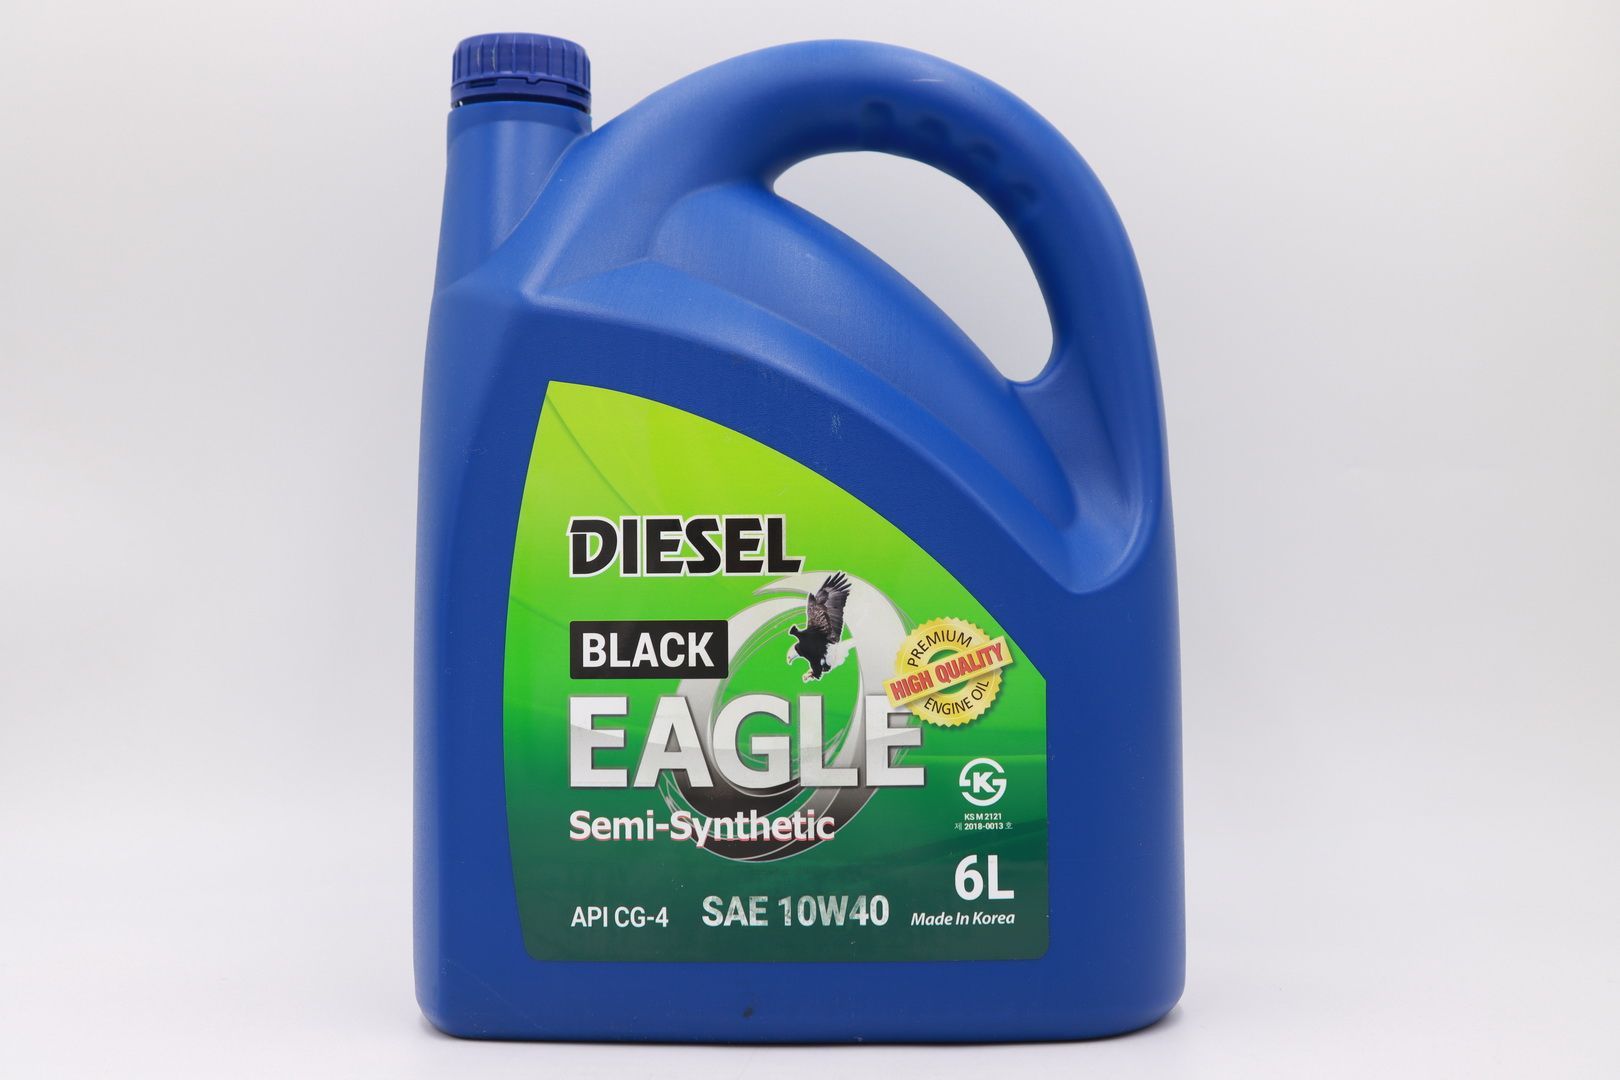 Моторное масло EAGLE BLACK Diesel Semi-Syn. 10W40 API CG-4 6L